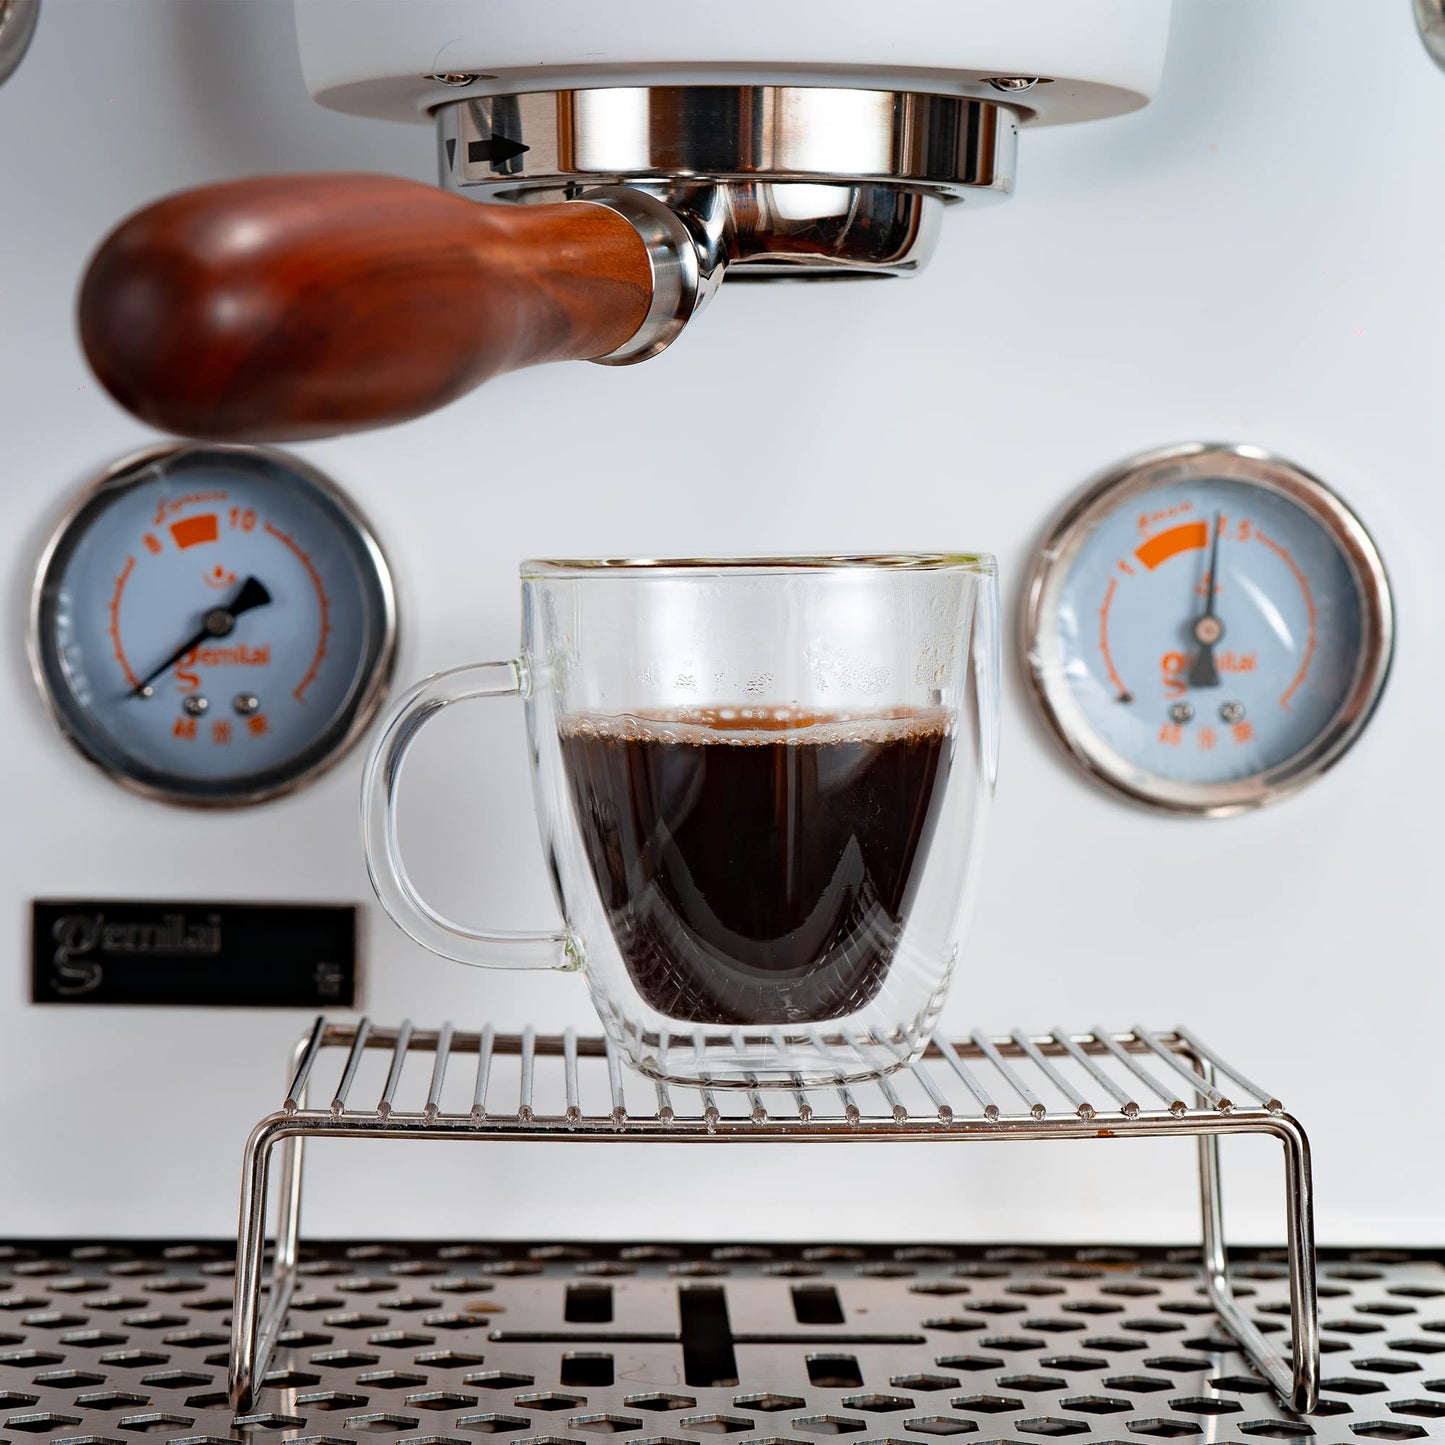 YUNCANG 5.5 oz Espresso Mugs (Set of 2)